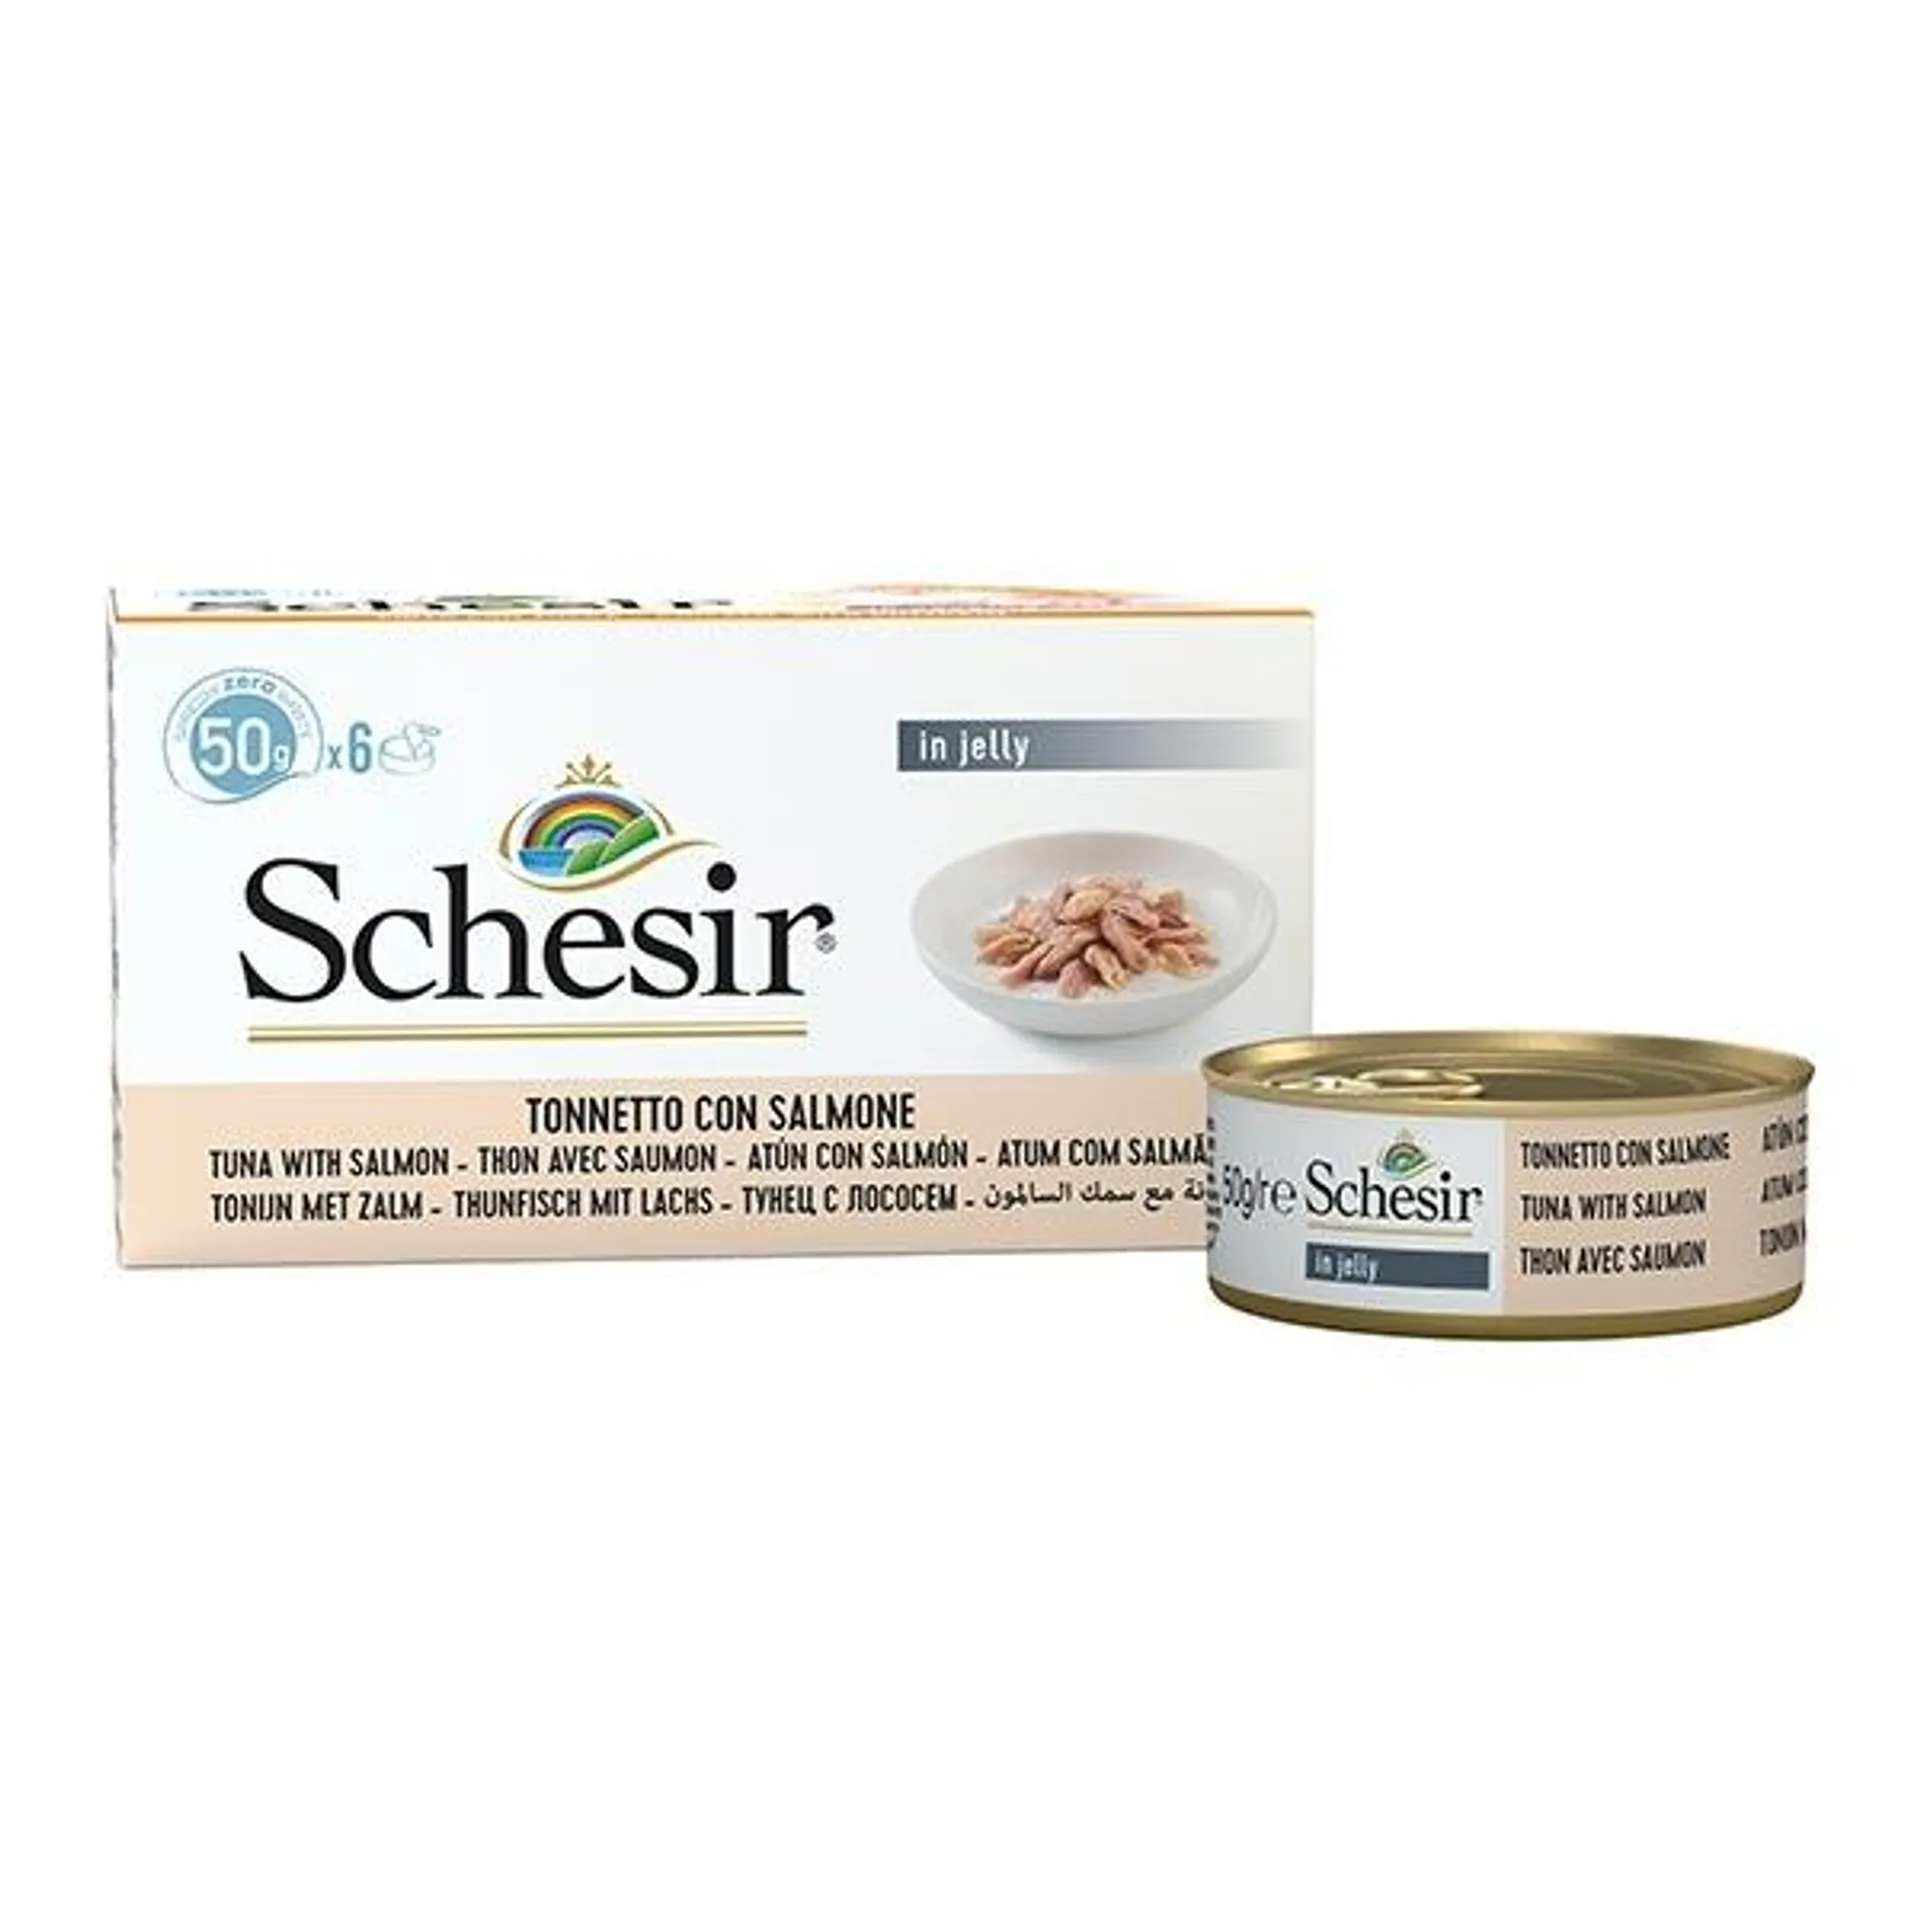 Schesir - Tonnetto con Salmone in Gelatina